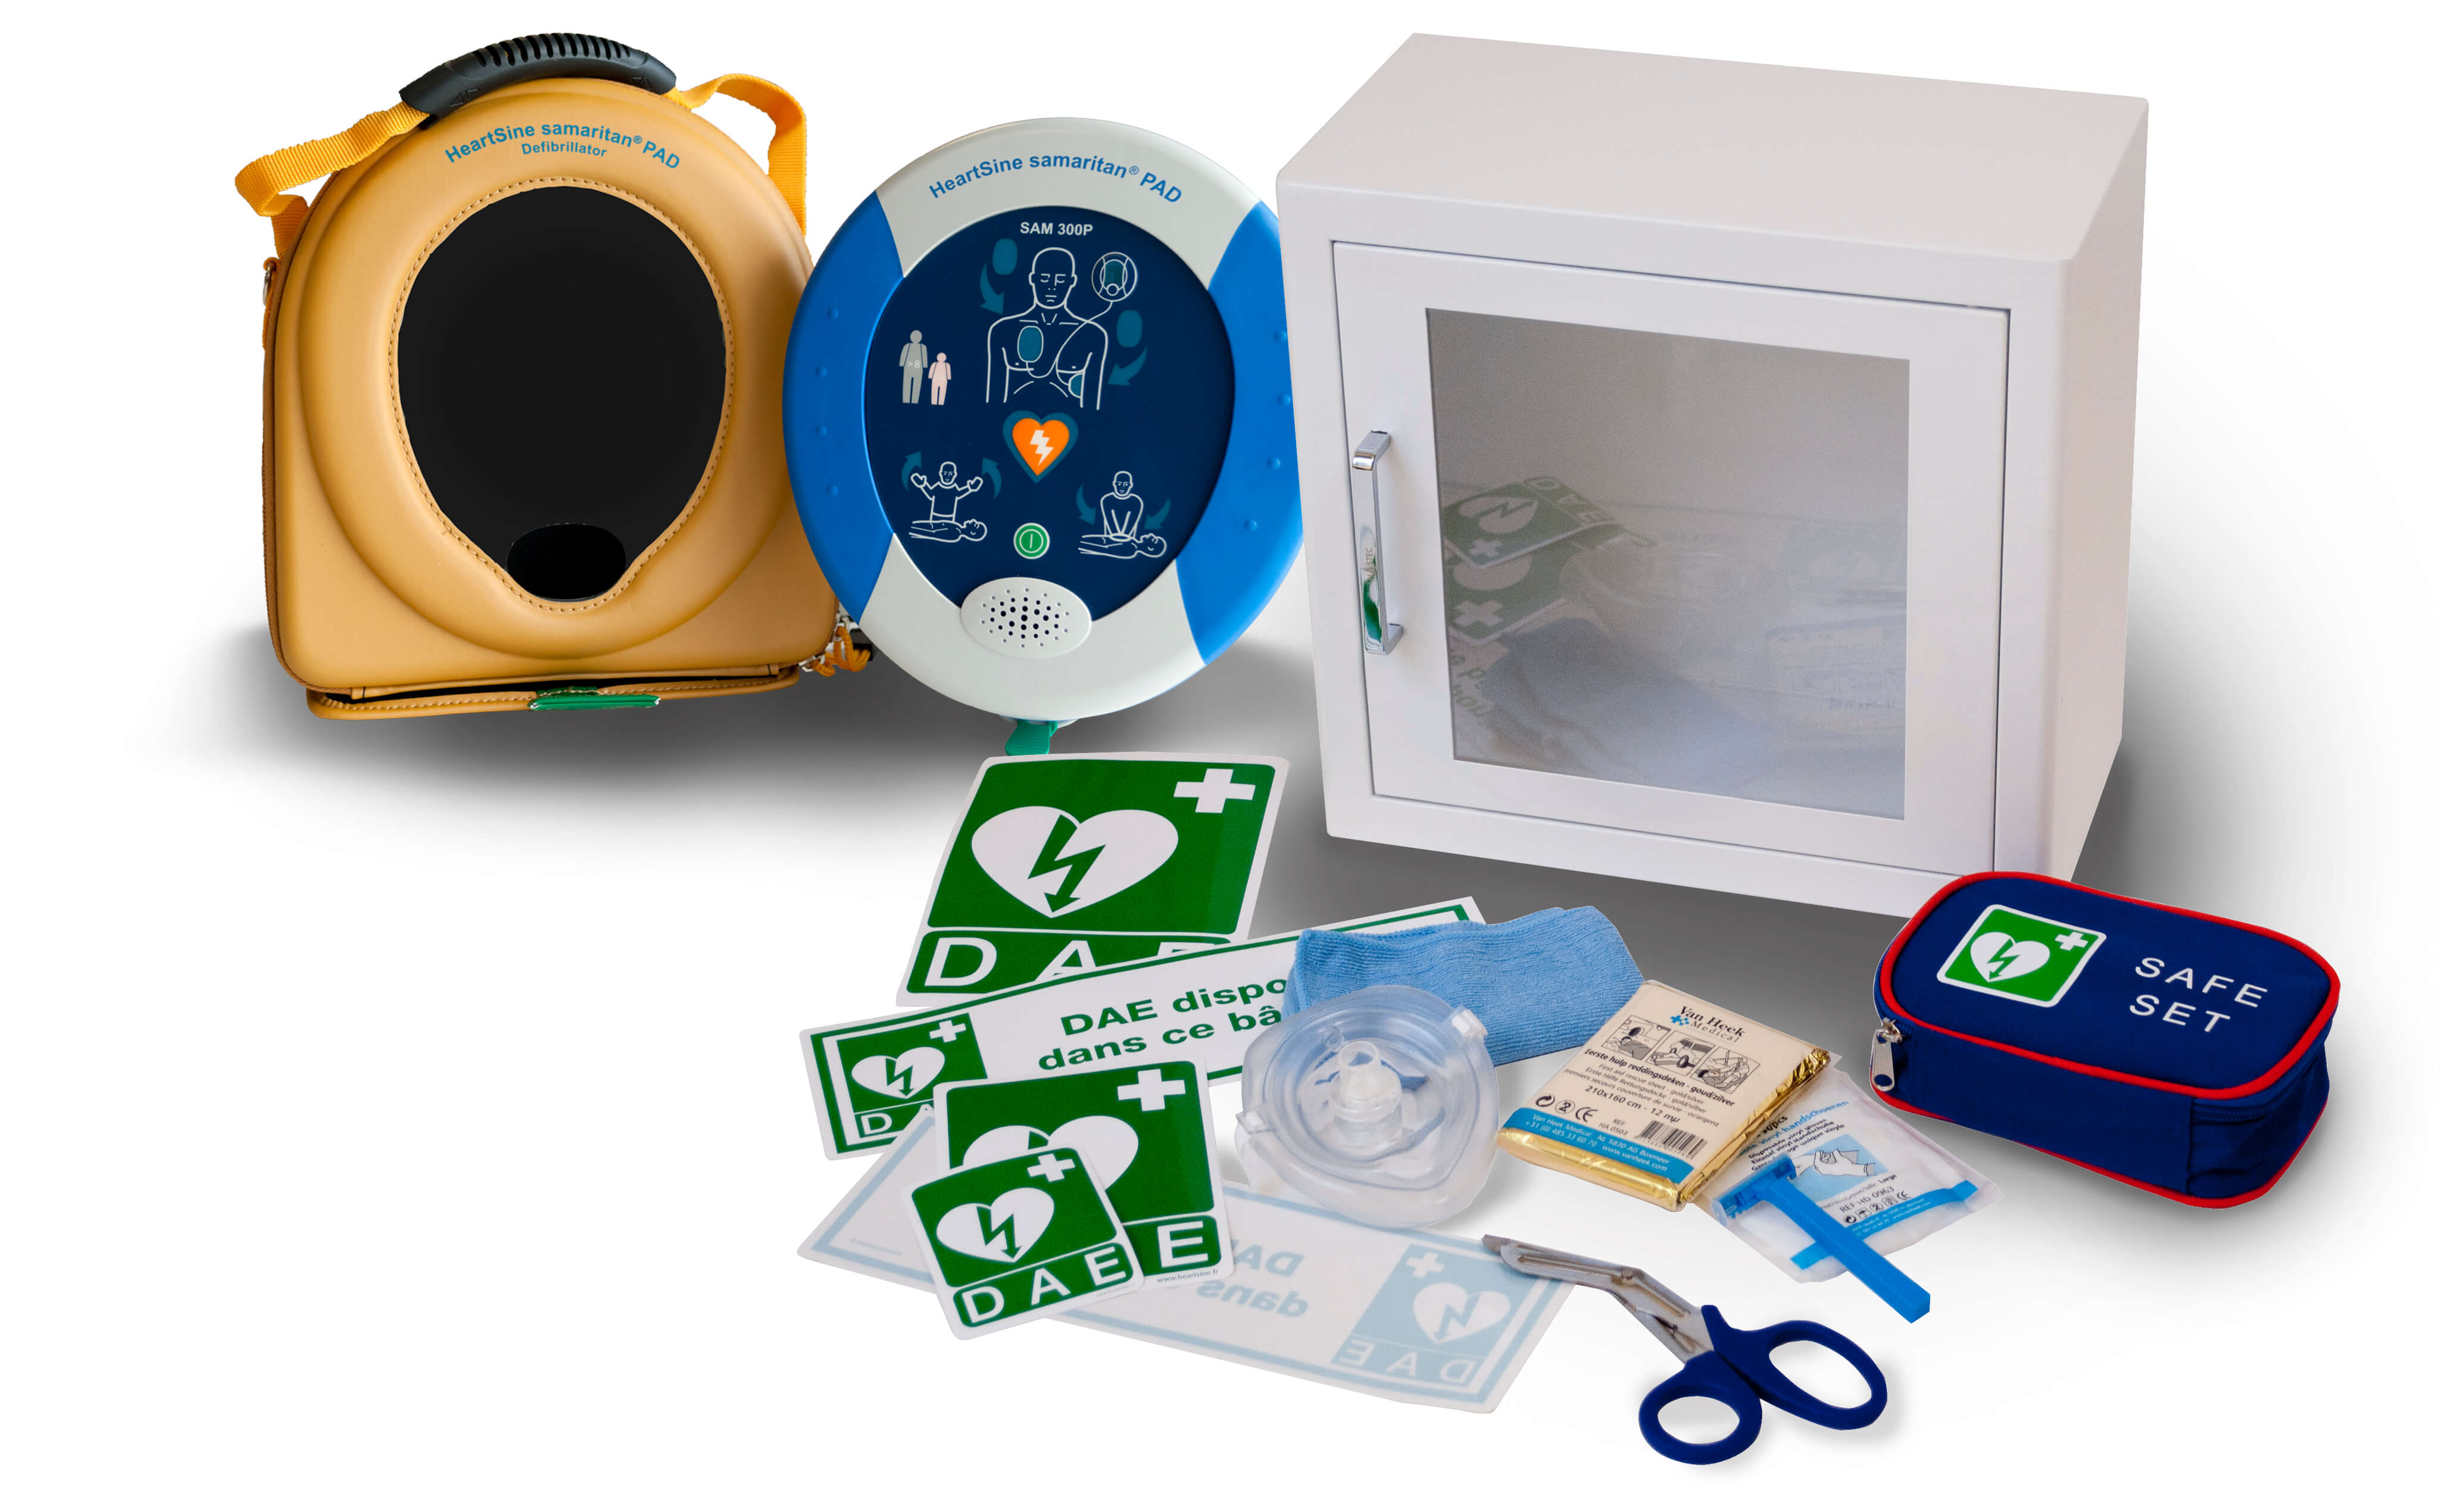 Pack défibrillateur automatique HeartSine avec armoire de protection, signalisation, trousse de secours et housse de transport pour le défibrillateur.